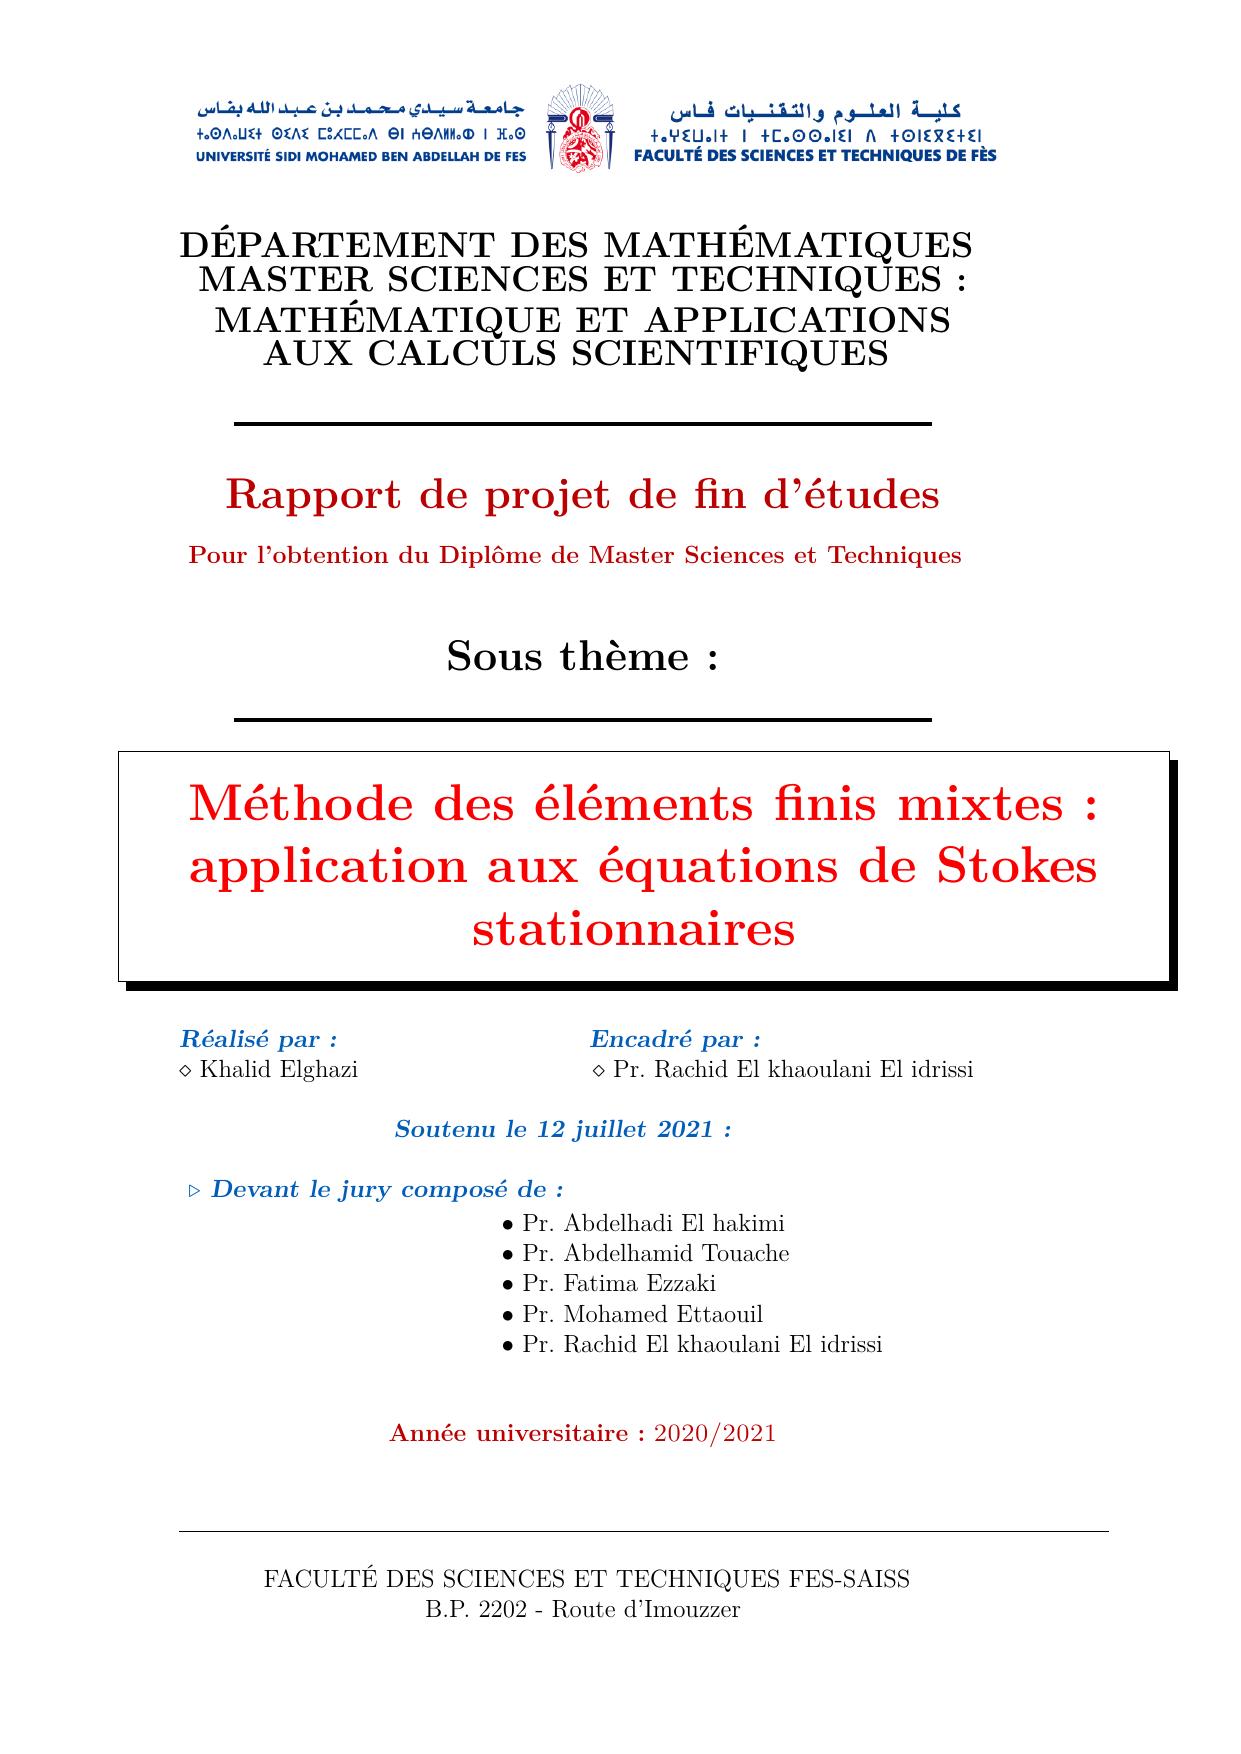 Méthode des éléments finis mixtes : application aux équations de Stokes stationnaires